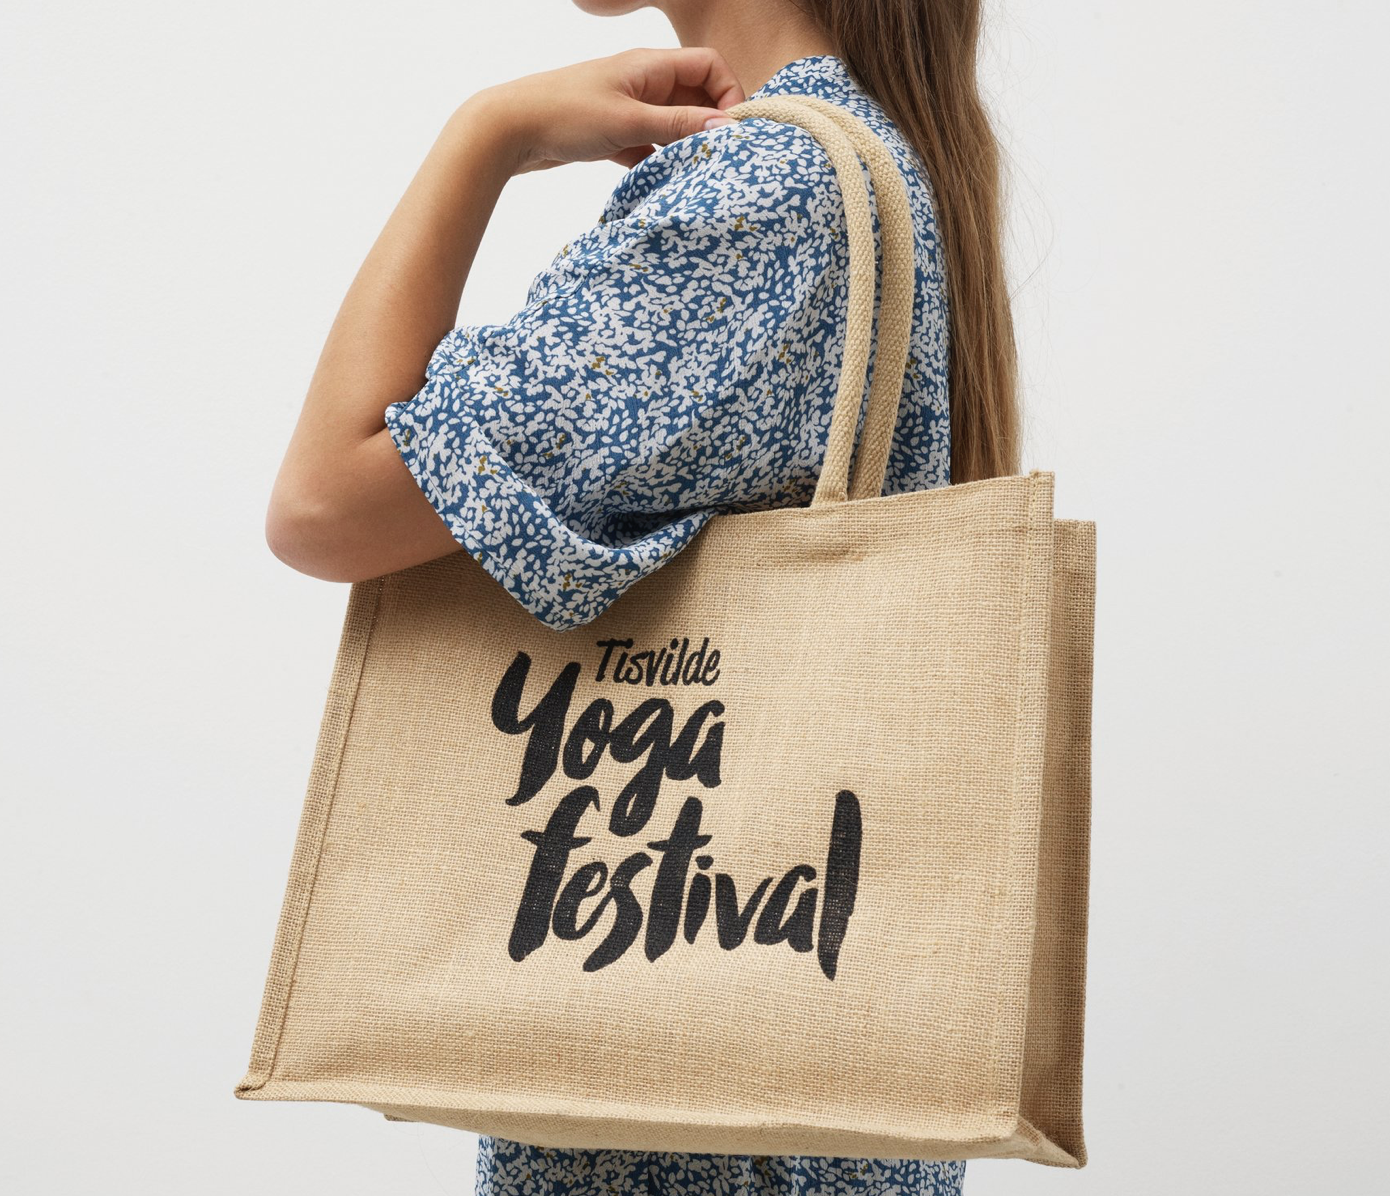 Tisvilde Yogafestival den 11. og 13. august 2023